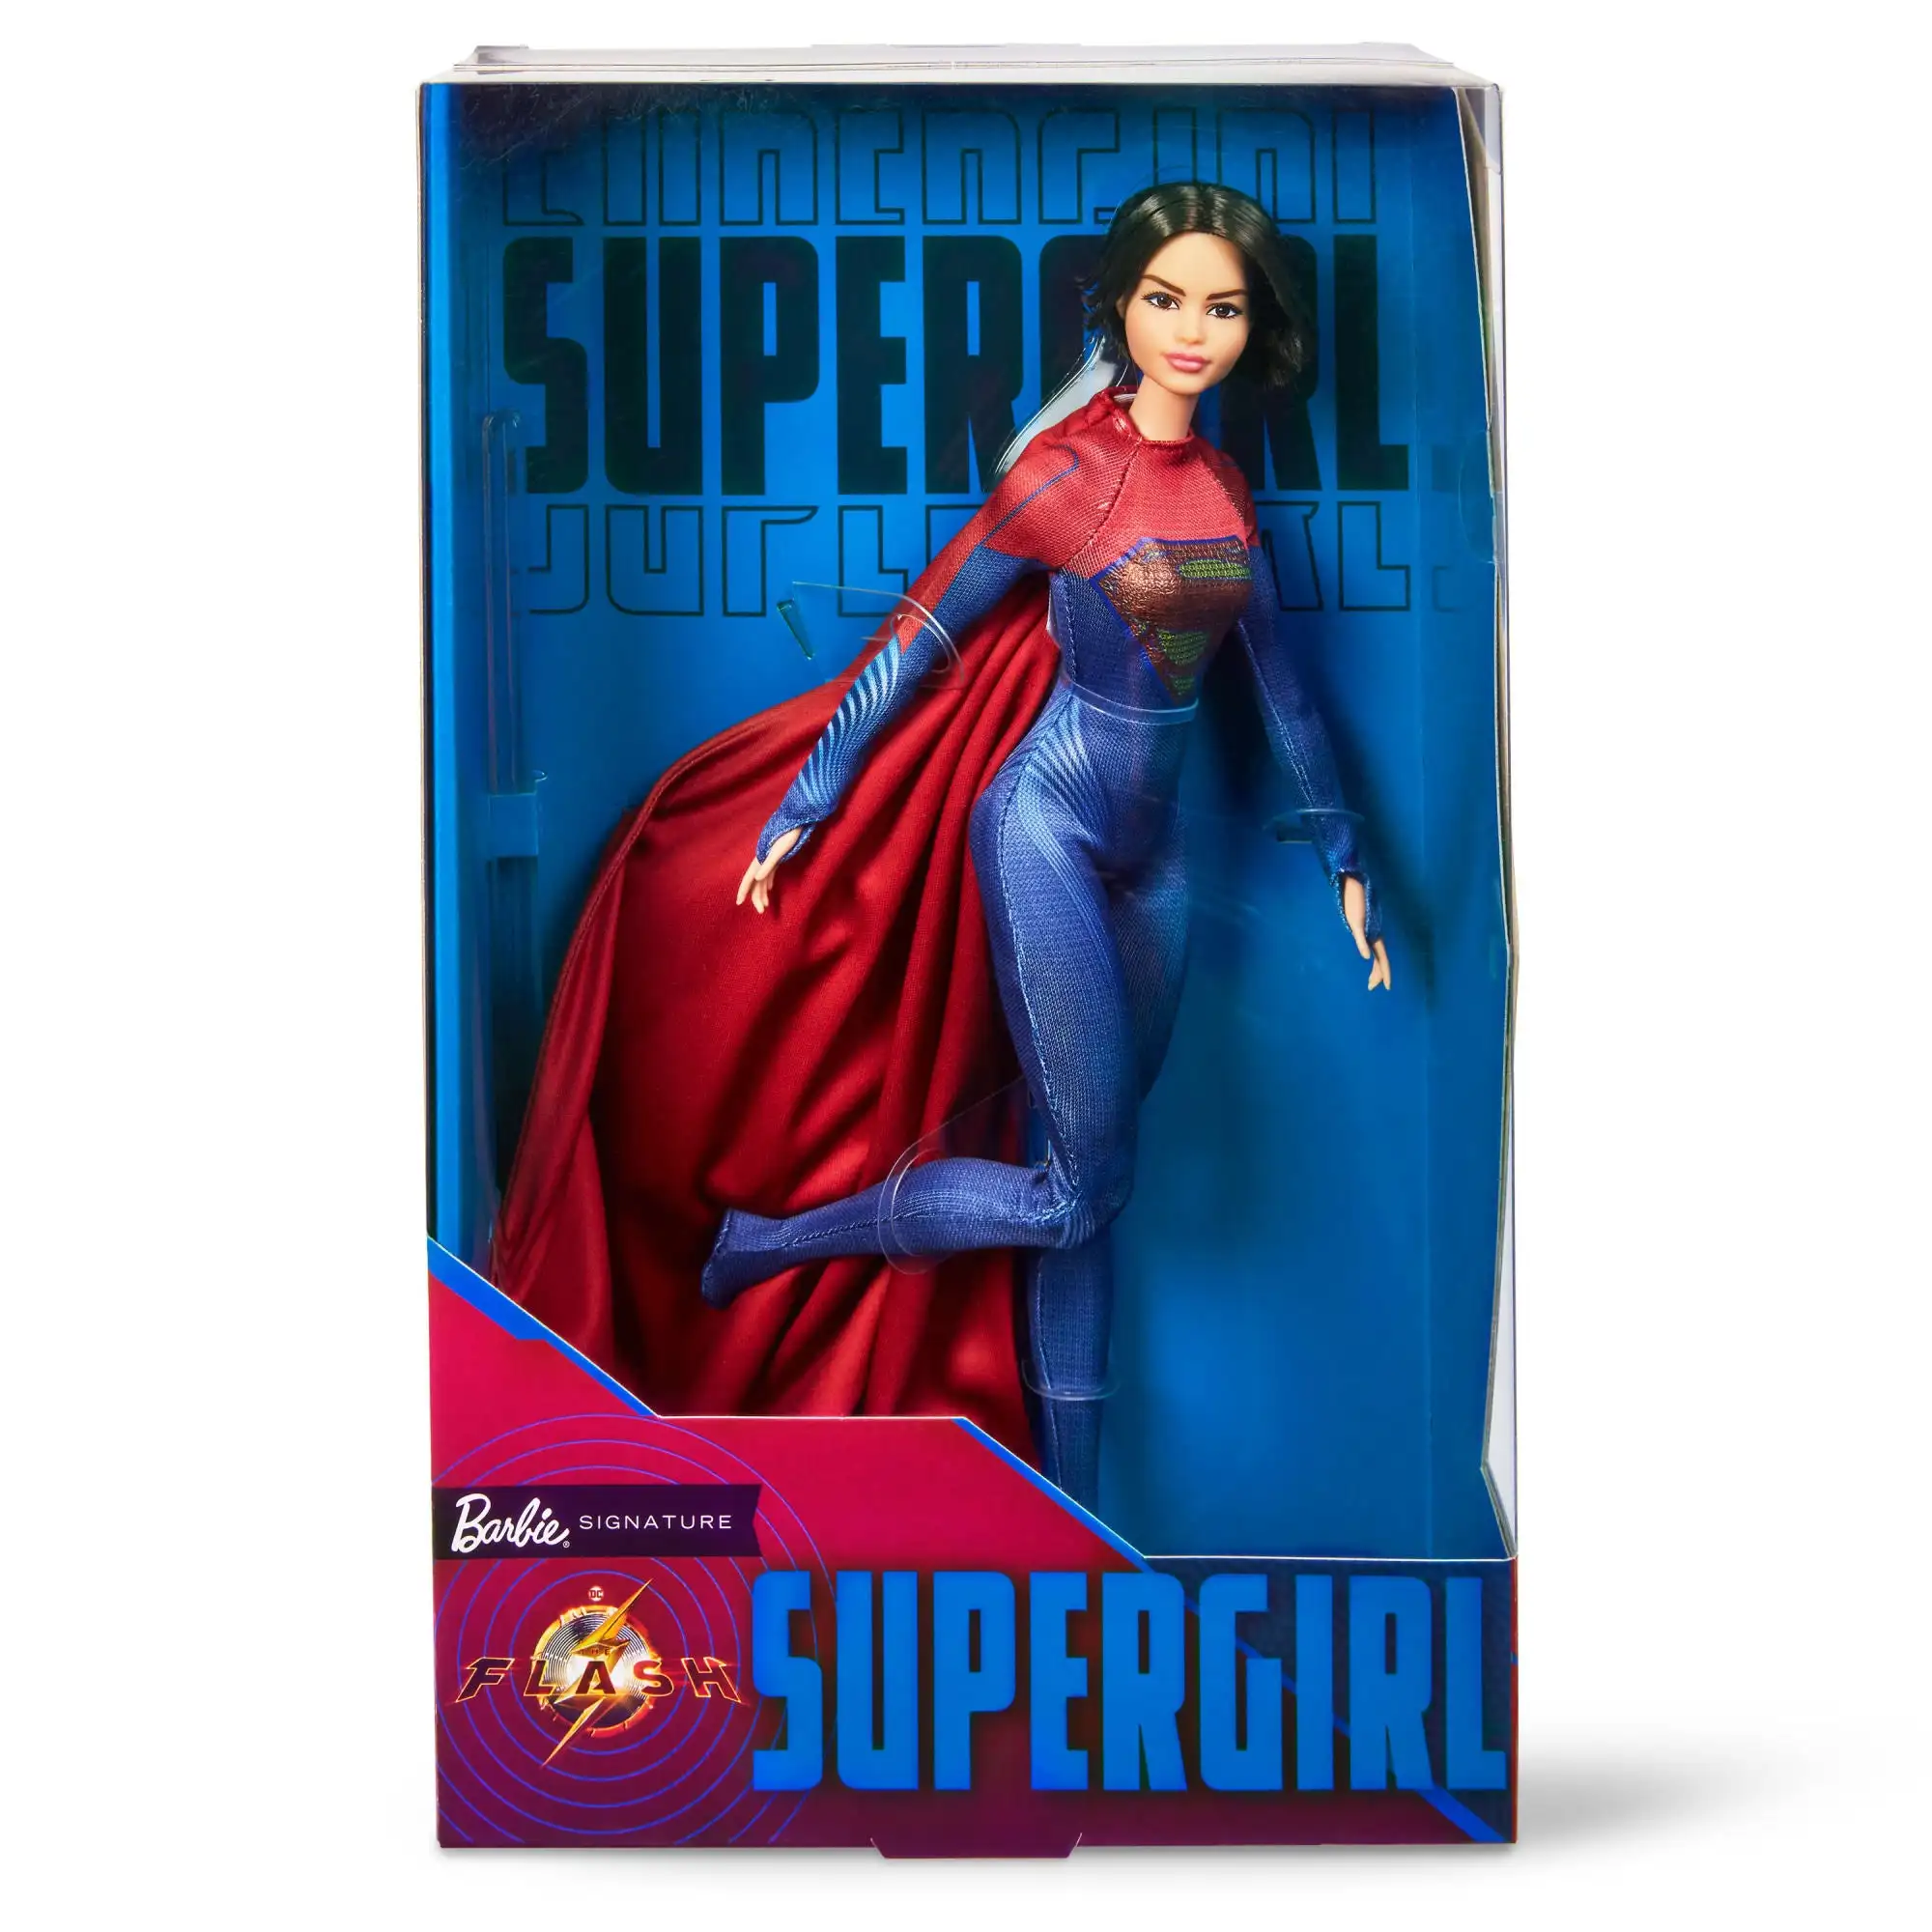 Предварительная продажа, оригинальная новая кукла Барби Supergirl,  коллекционная кукла из фильма Flash Hkg13, коллекционная игрушка, подарок  для девочки | AliExpress